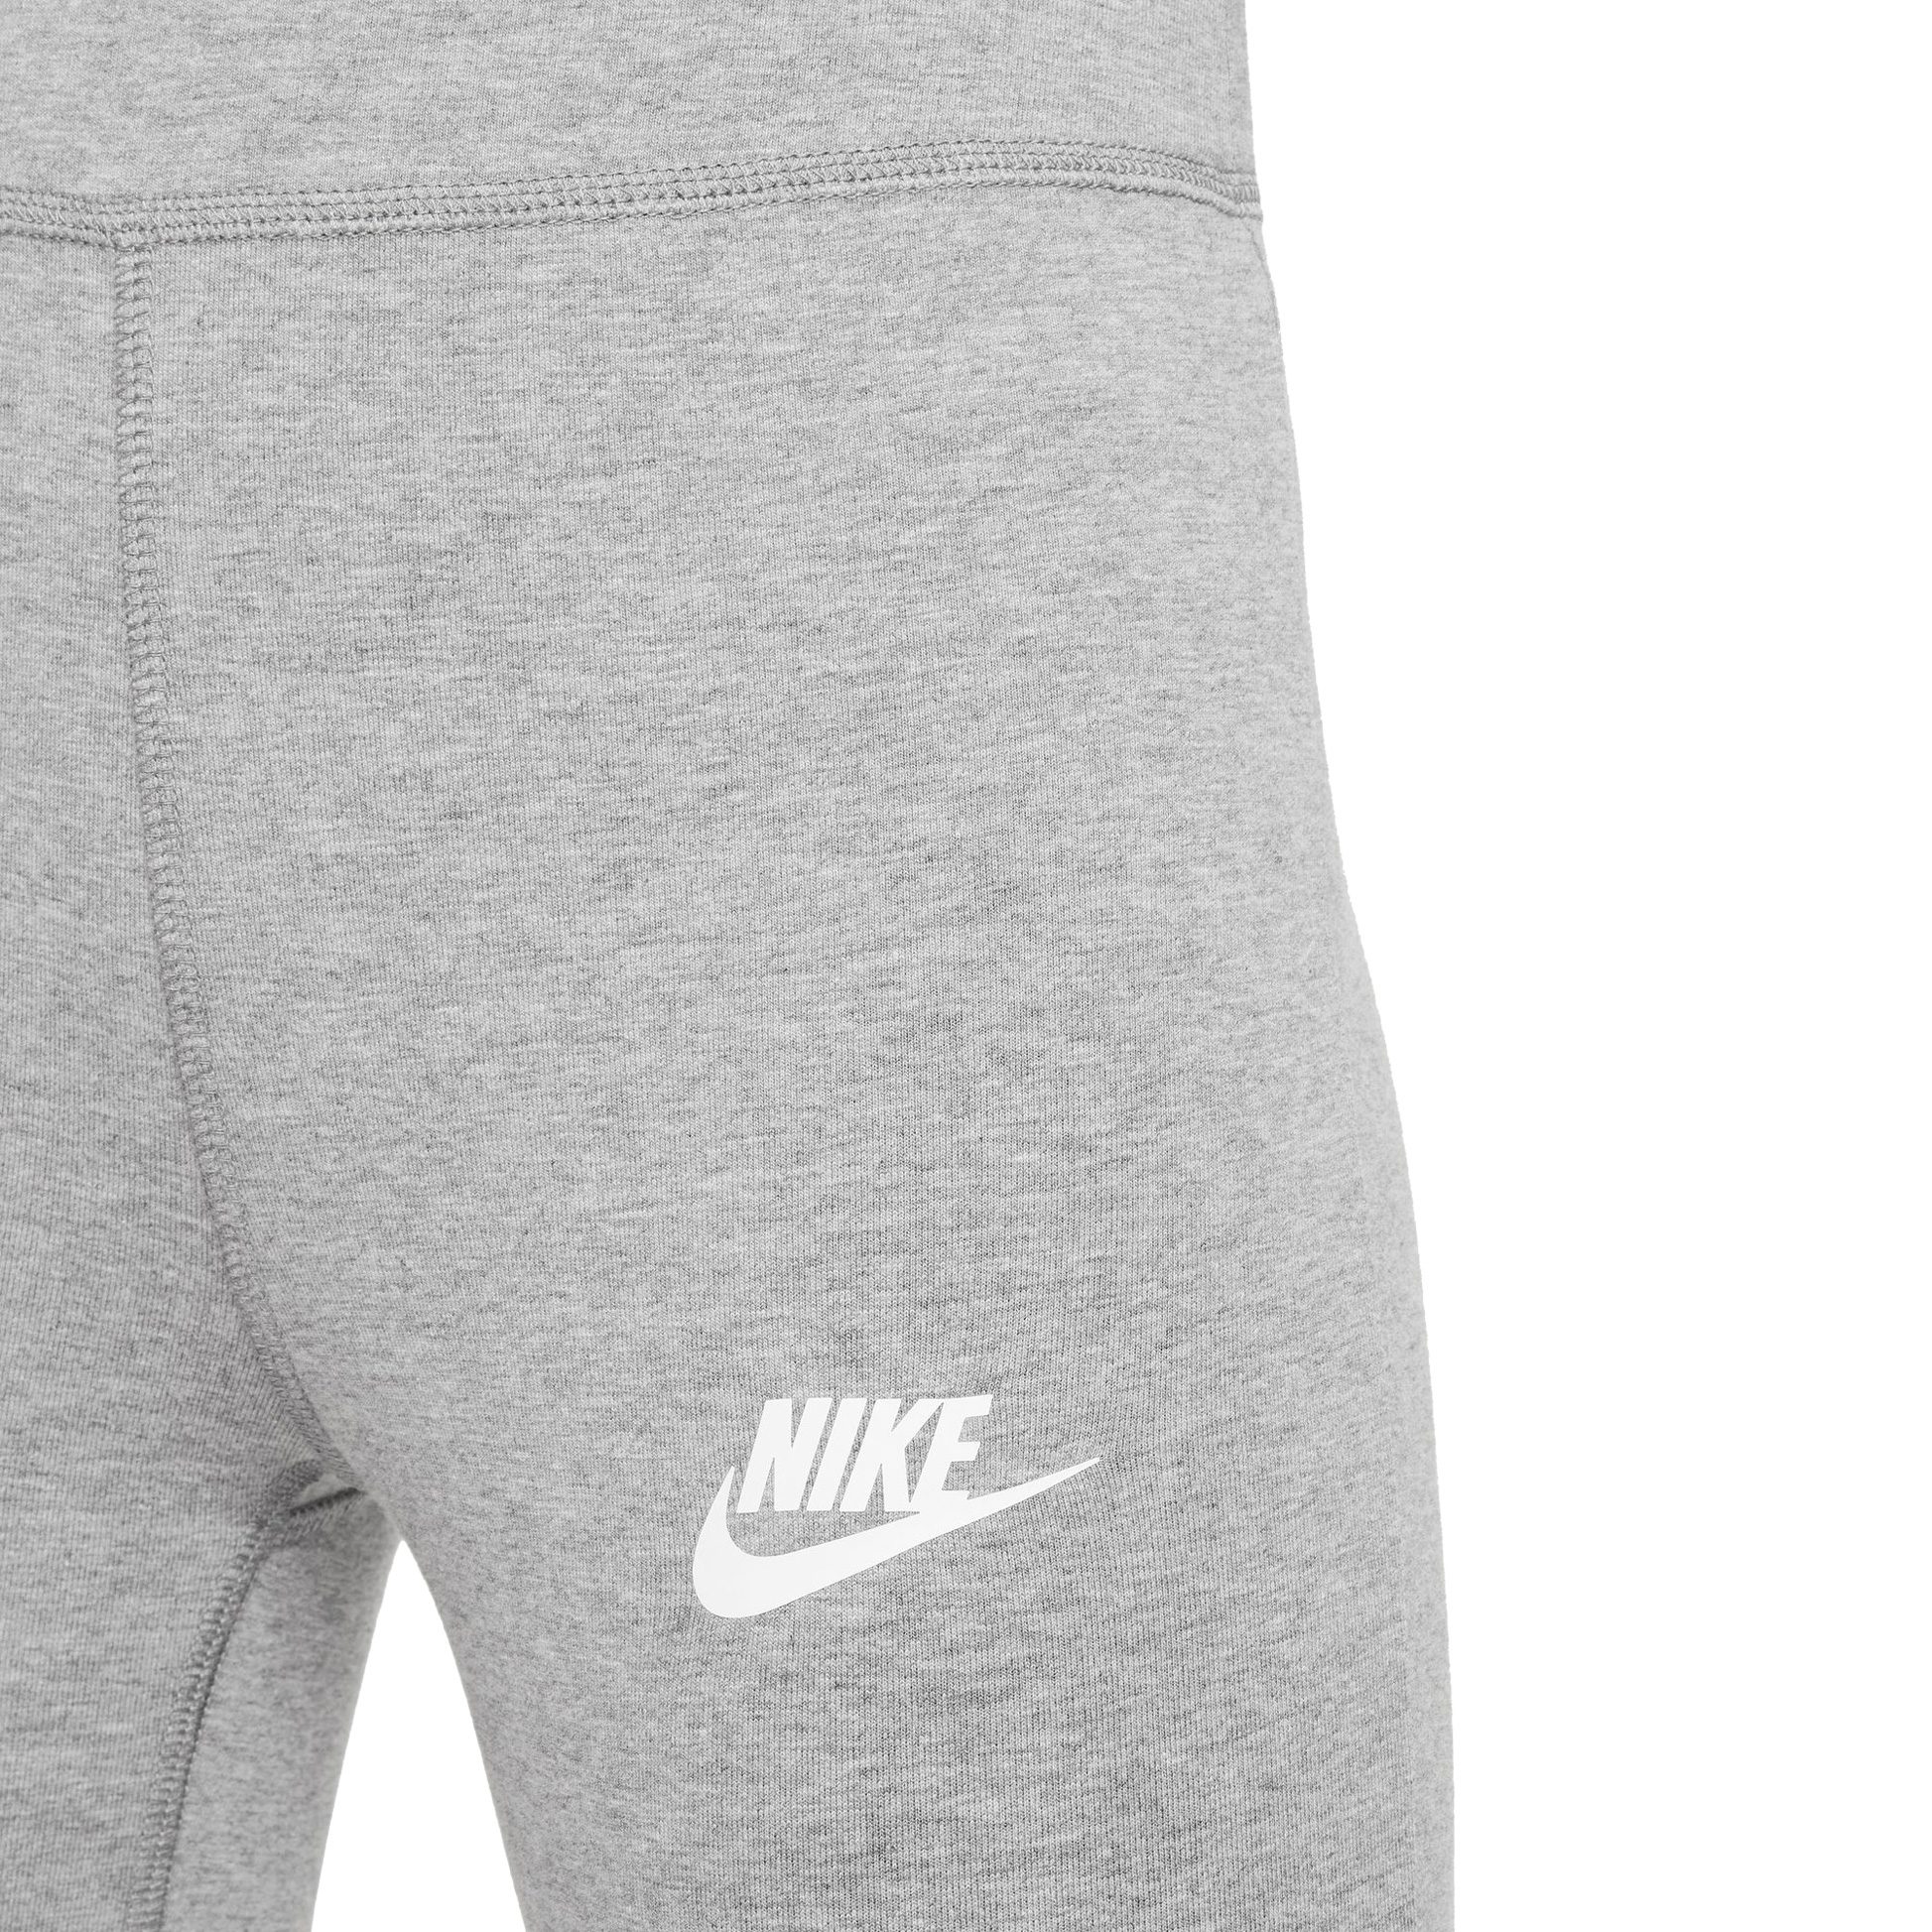 Nike - Sportswear Favorites Leggings Mädchen carbon heather kaufen im Sport  Bittl Shop